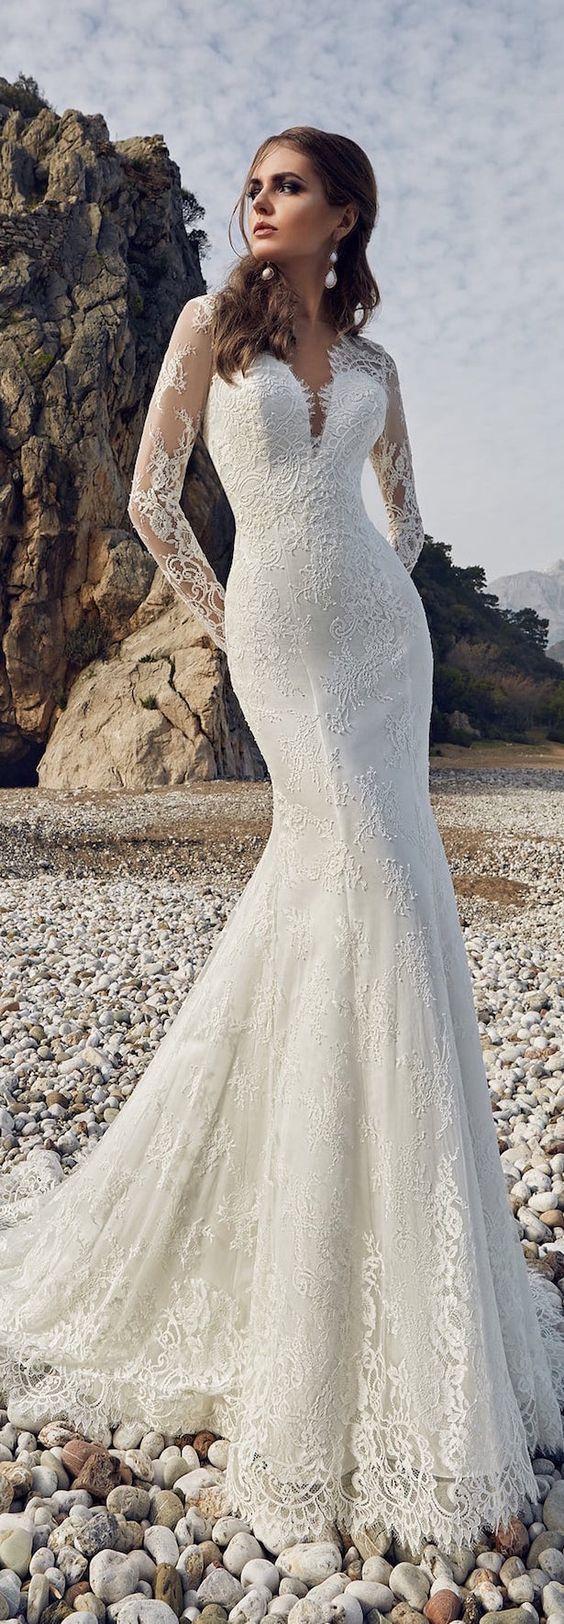 زفاف - Wedding Dress Inspiration - Lanesta Bridal